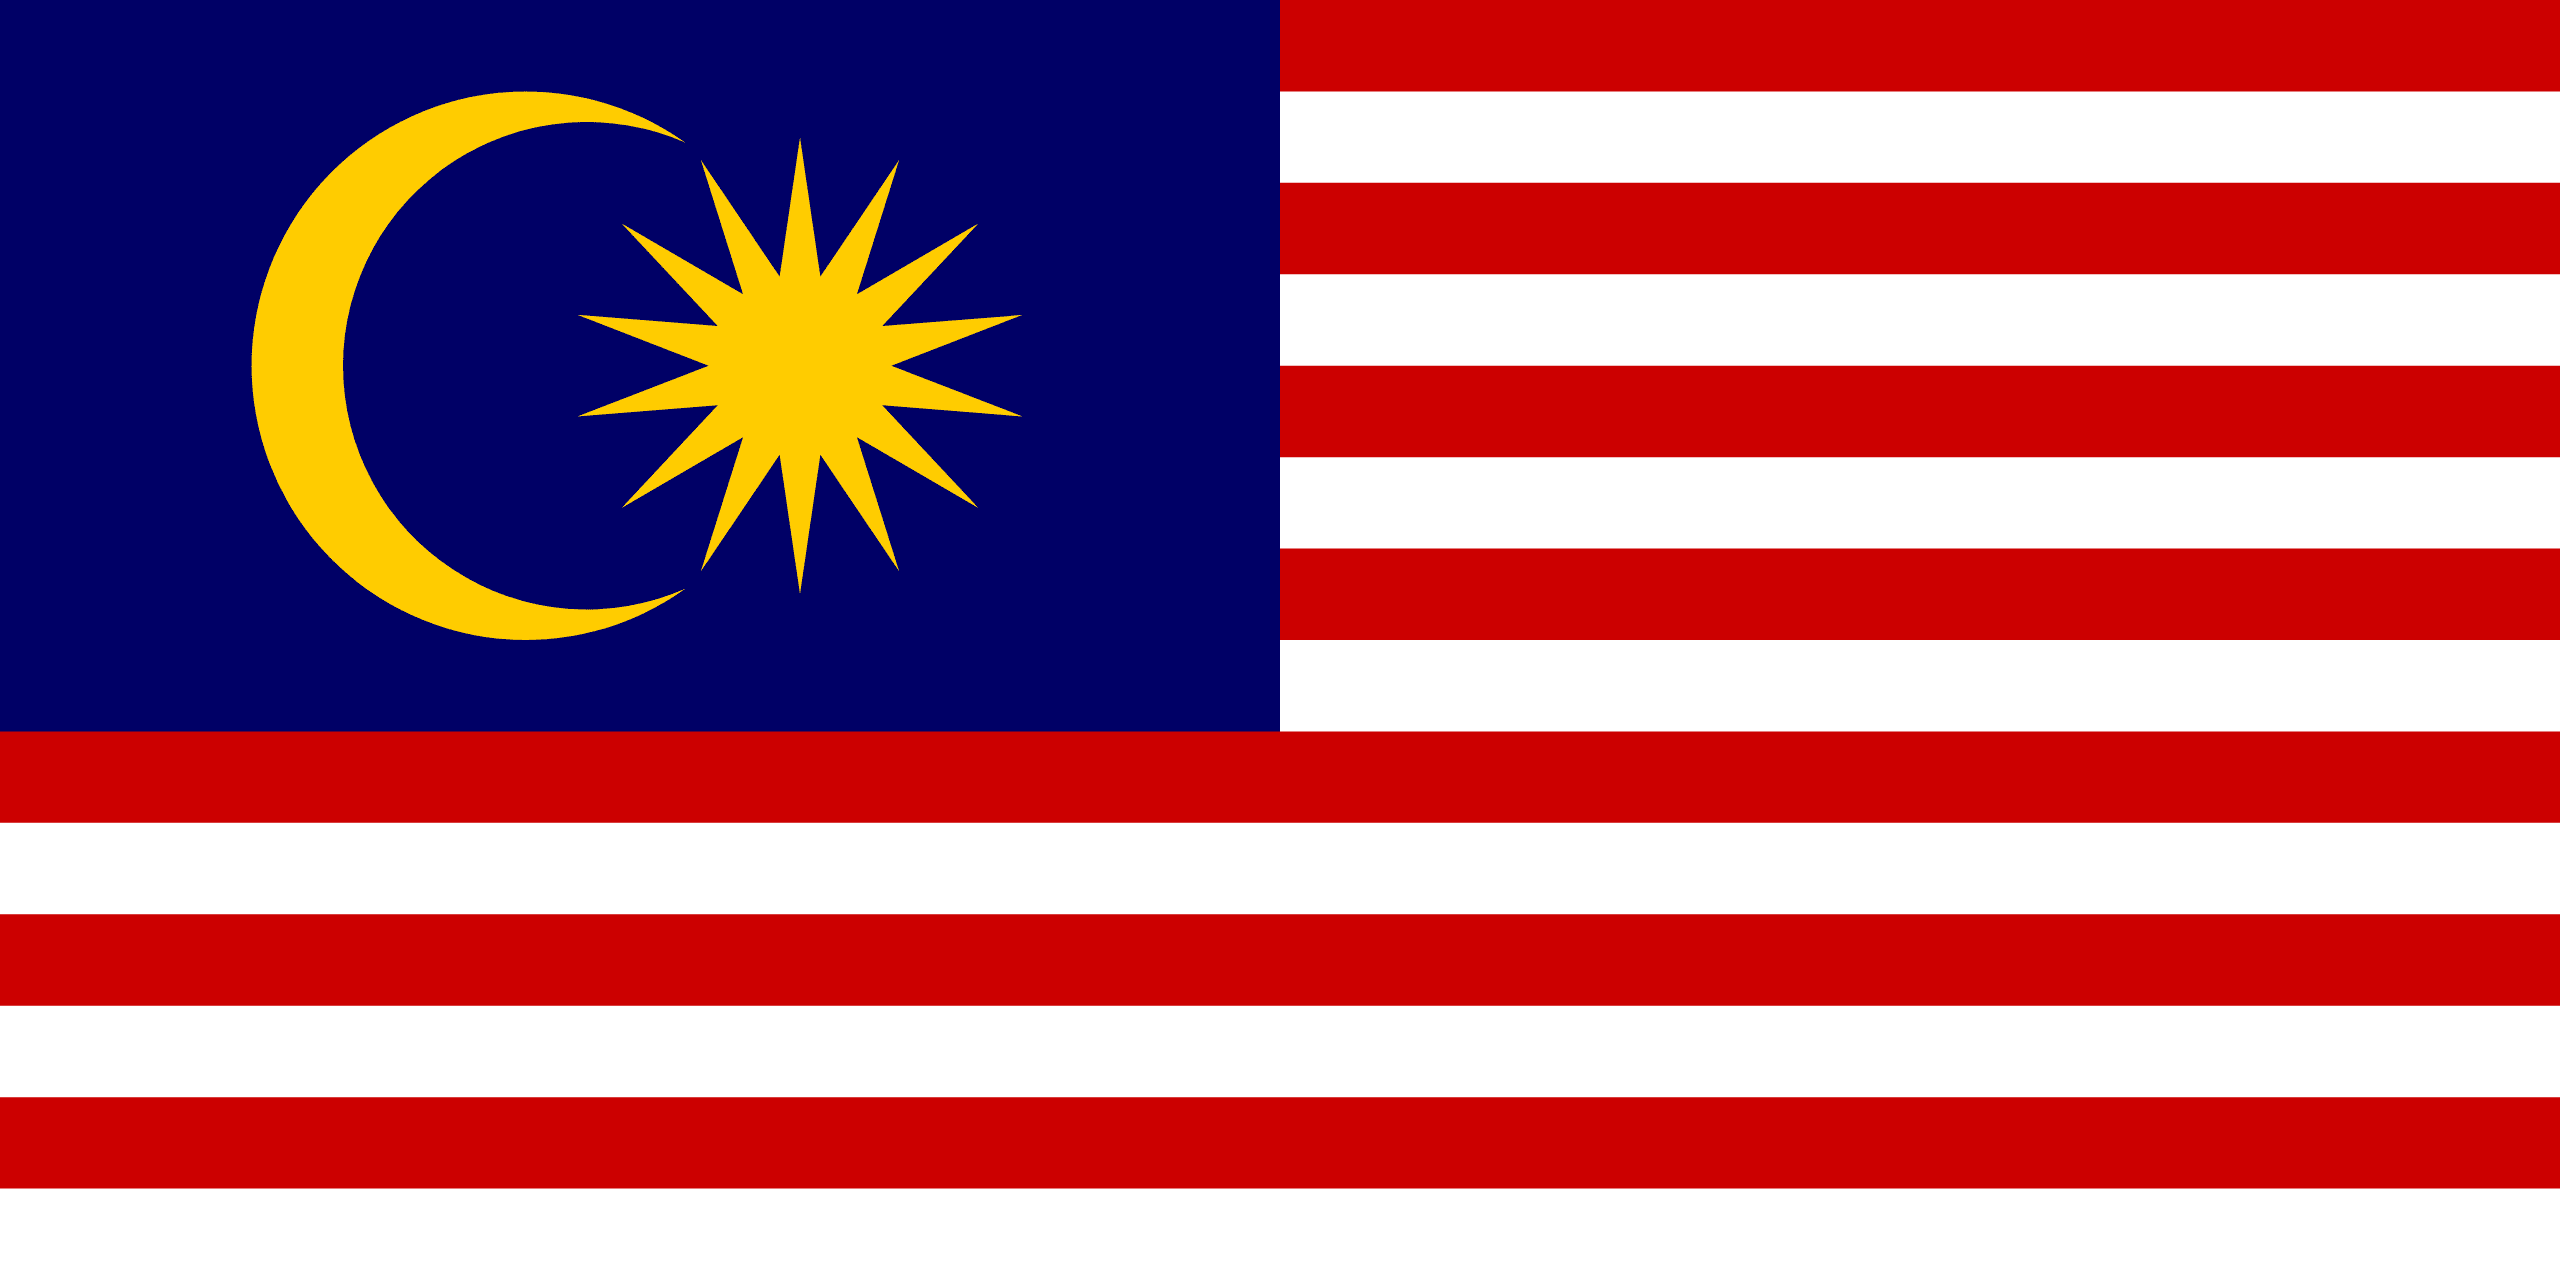 天津港到Port Klang West, Malaysia 巴生西,马来西亚